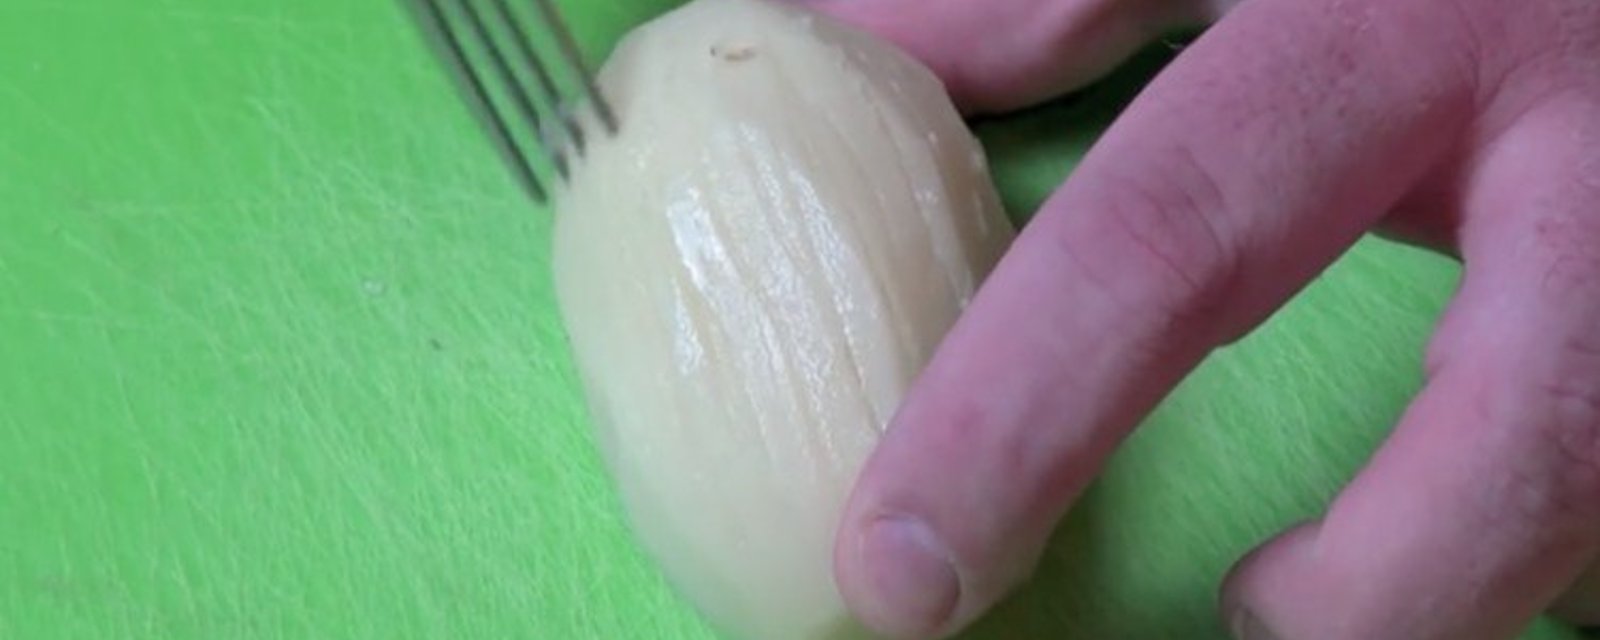 Voici ce qui se produit quand vous passez une fourchette sur une patate